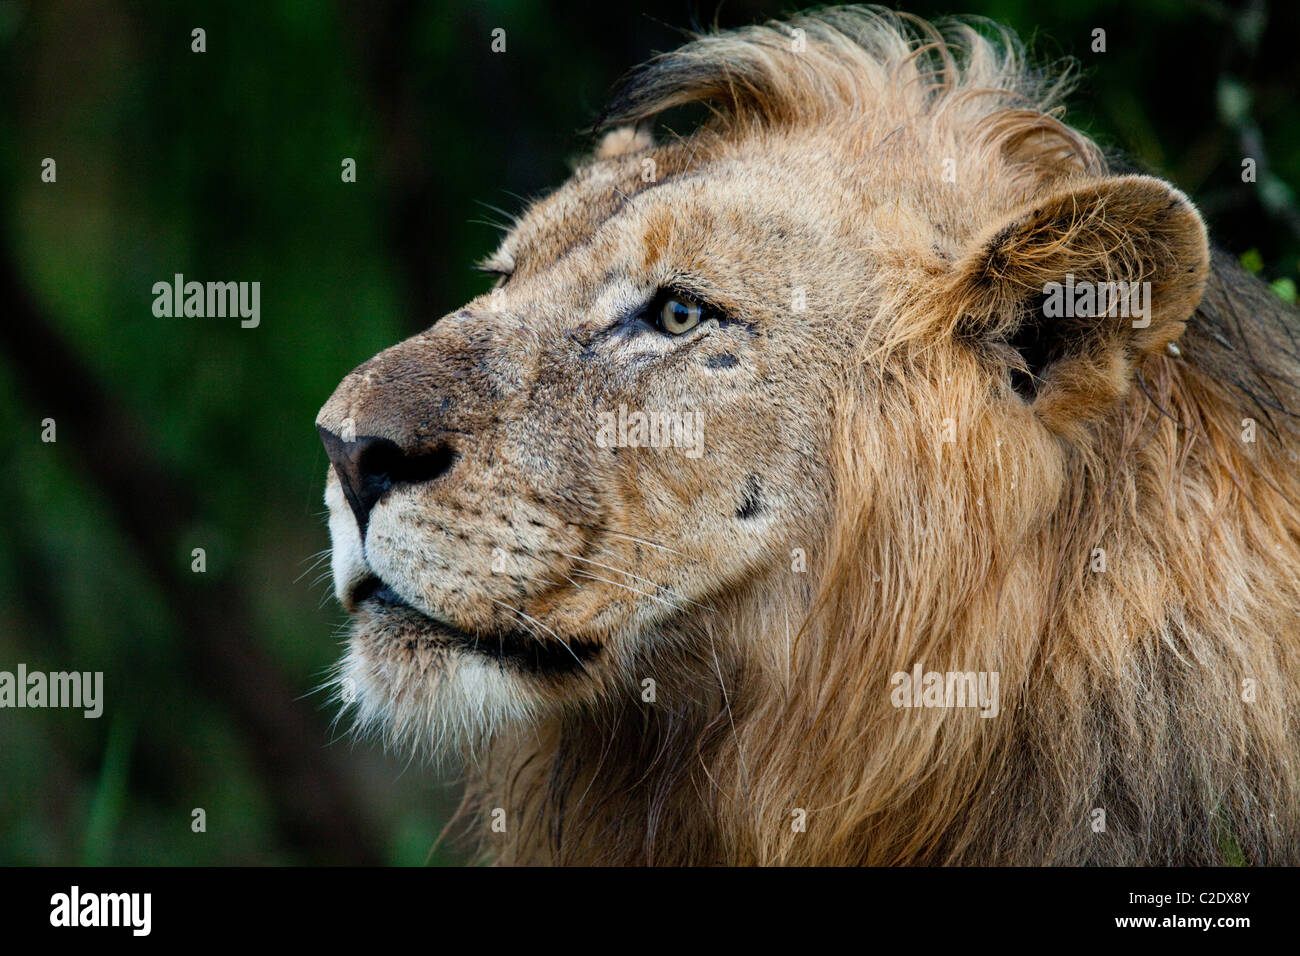 Portrait lion (Panthera leo). Les espèces vulnérables. Hluhluwe Imfolozi Game Reserve. Kwazulu-Natal, Afrique du Sud. Novembre 201 Banque D'Images